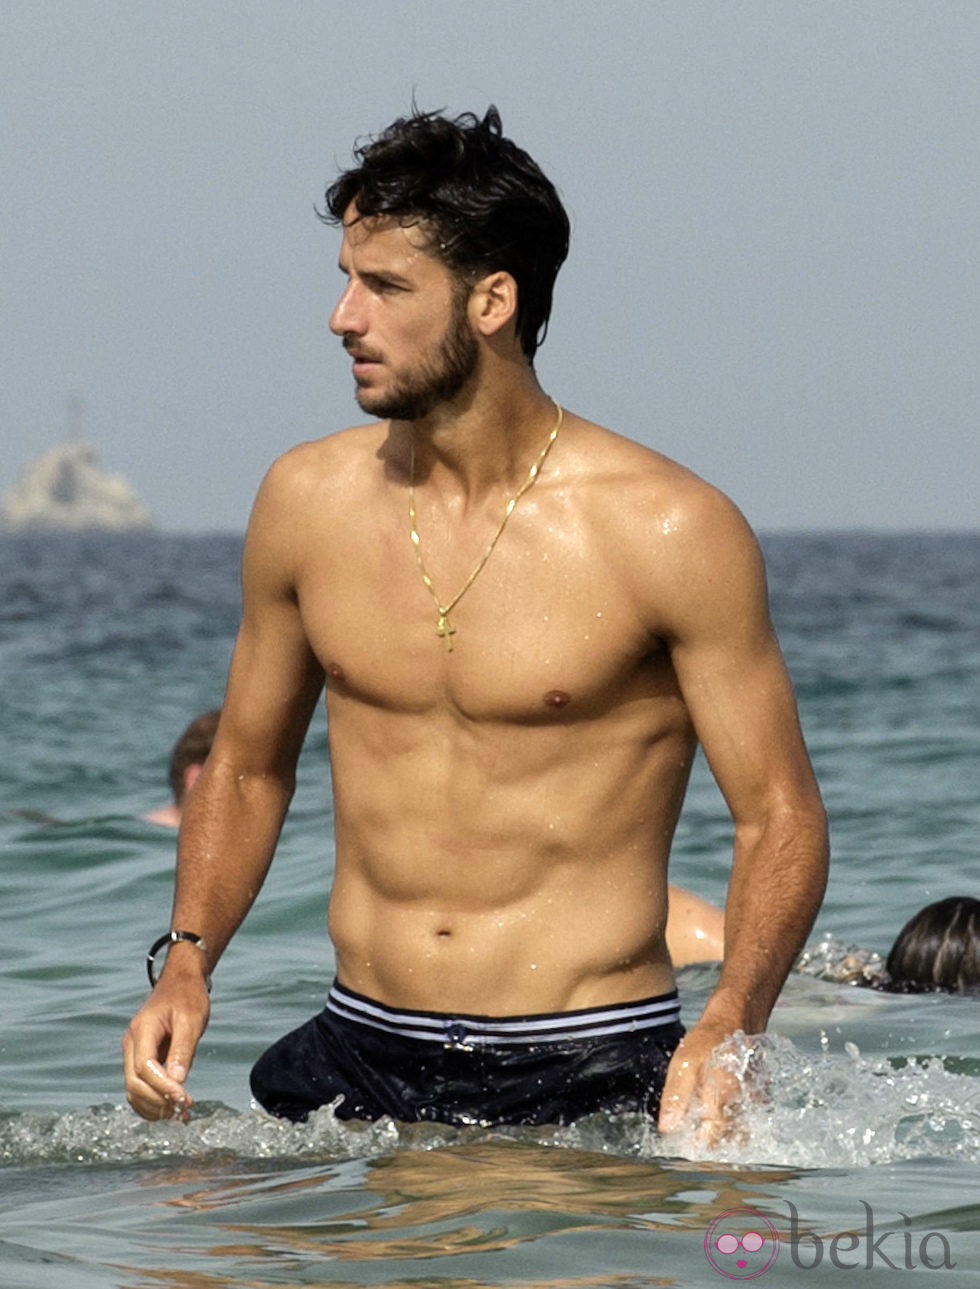 El torso desnudo de Feliciano López en Ibiza